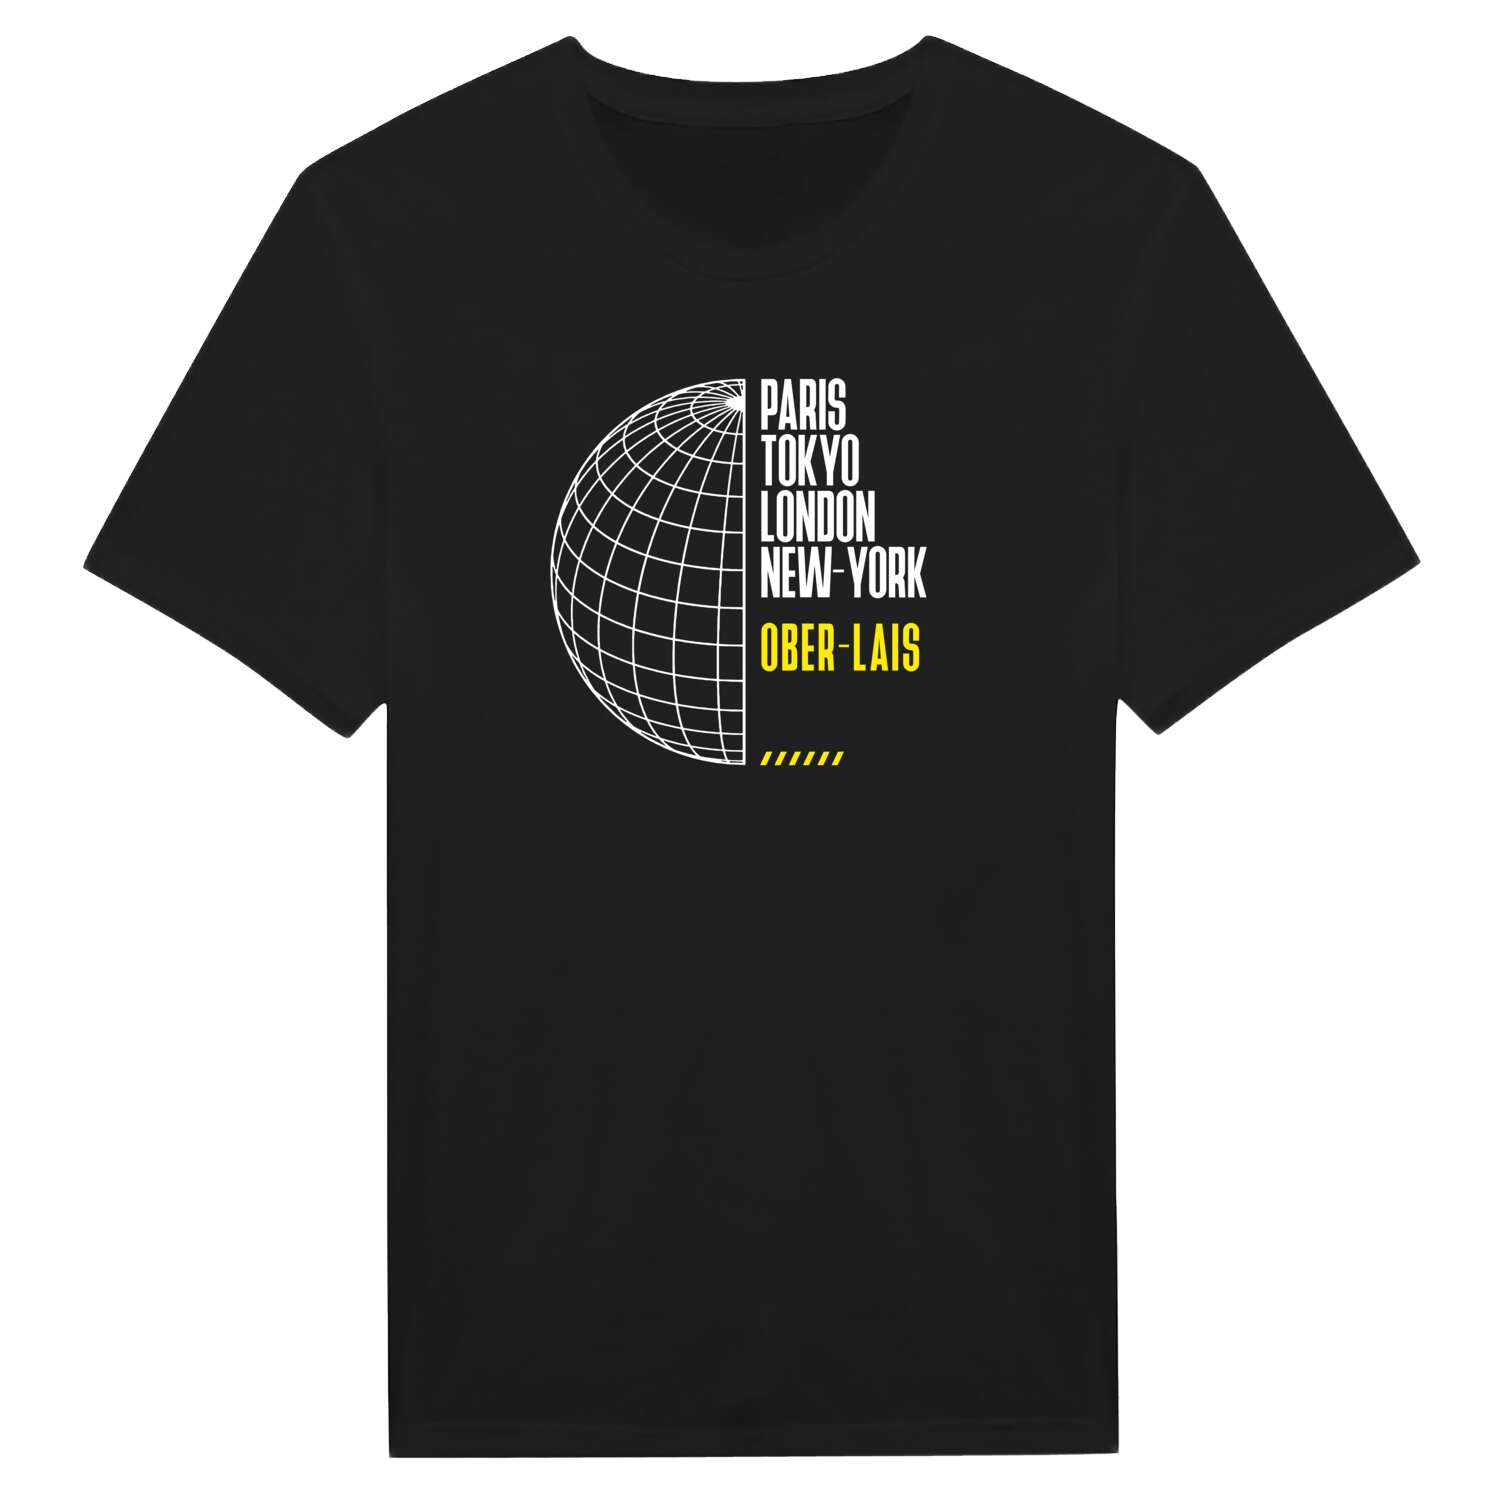 Ober-Lais T-Shirt »Paris Tokyo London«